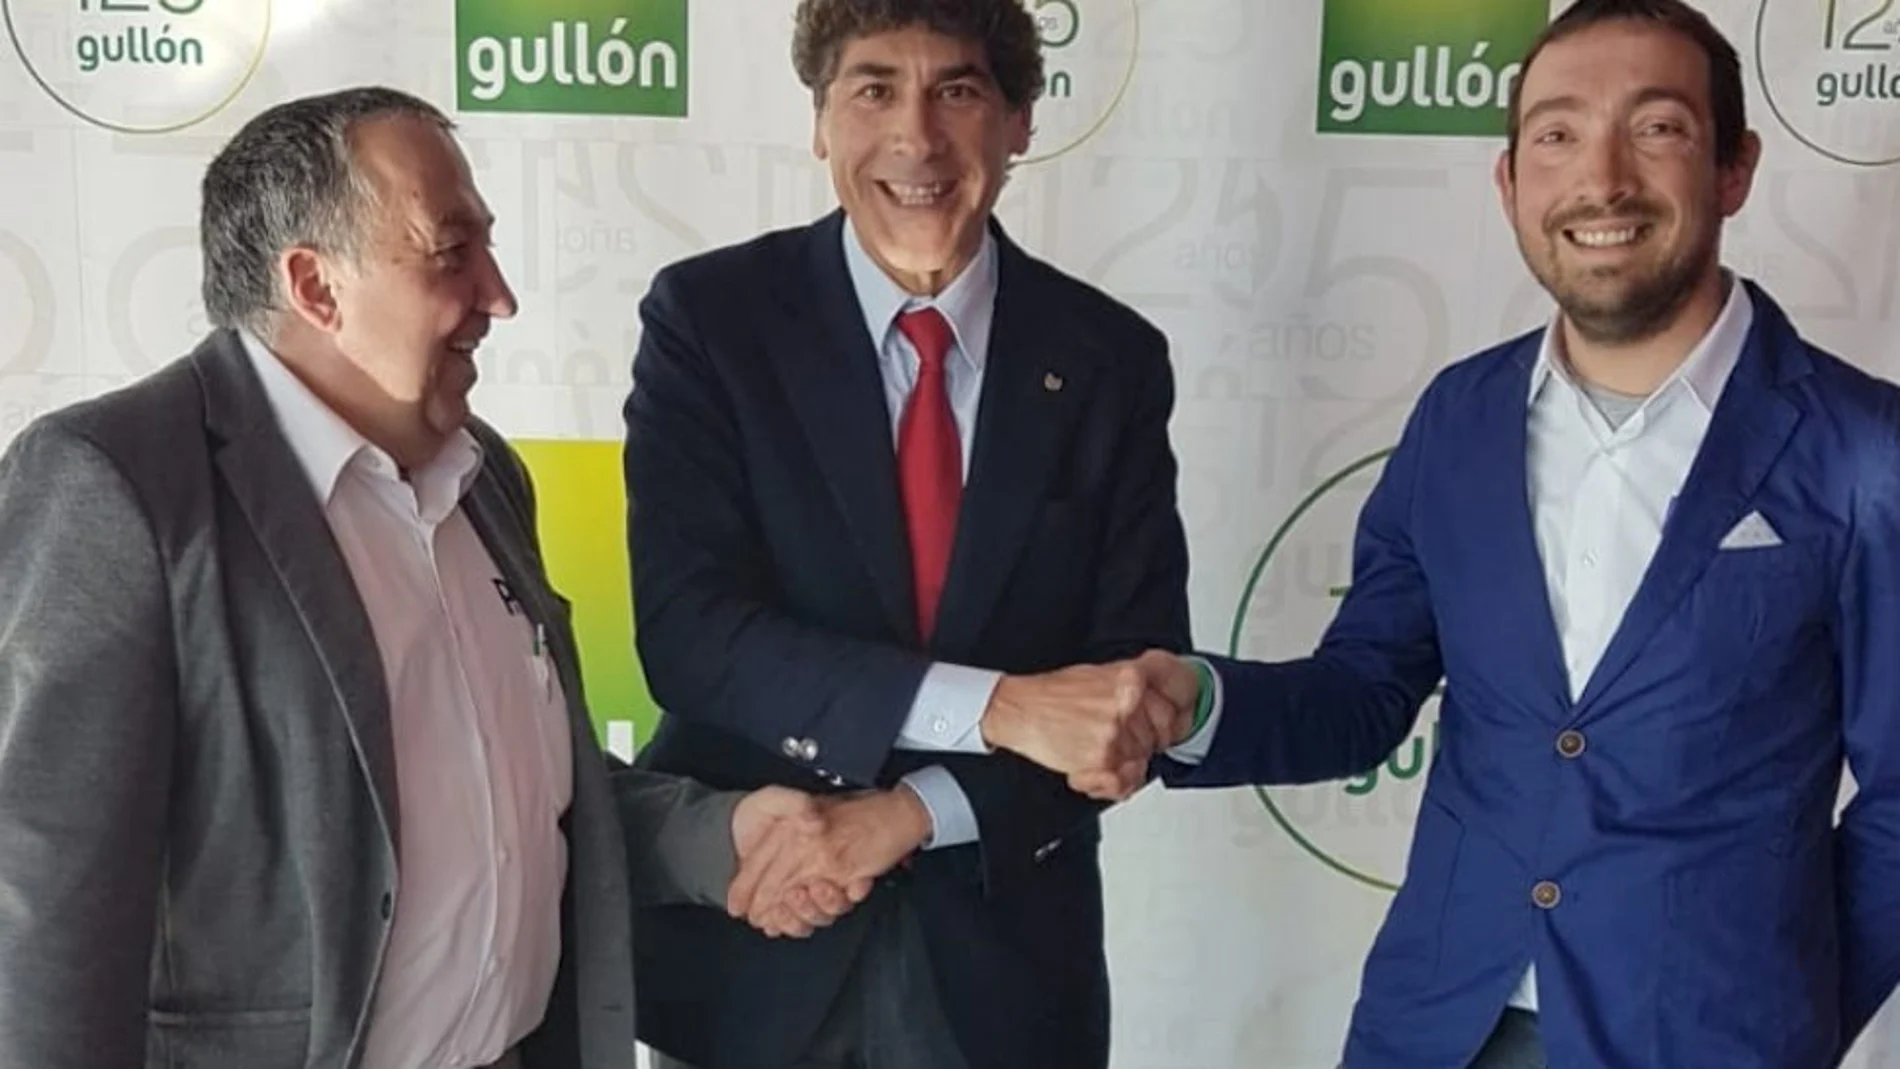 Javier Urbón, director de Relaciones Institucionales de Gullón, junto a Javier Cagigal, director ejecutivo de la Vuelta, y Jaime Andrés, presidente del Club Ciclista Montaña Palentina